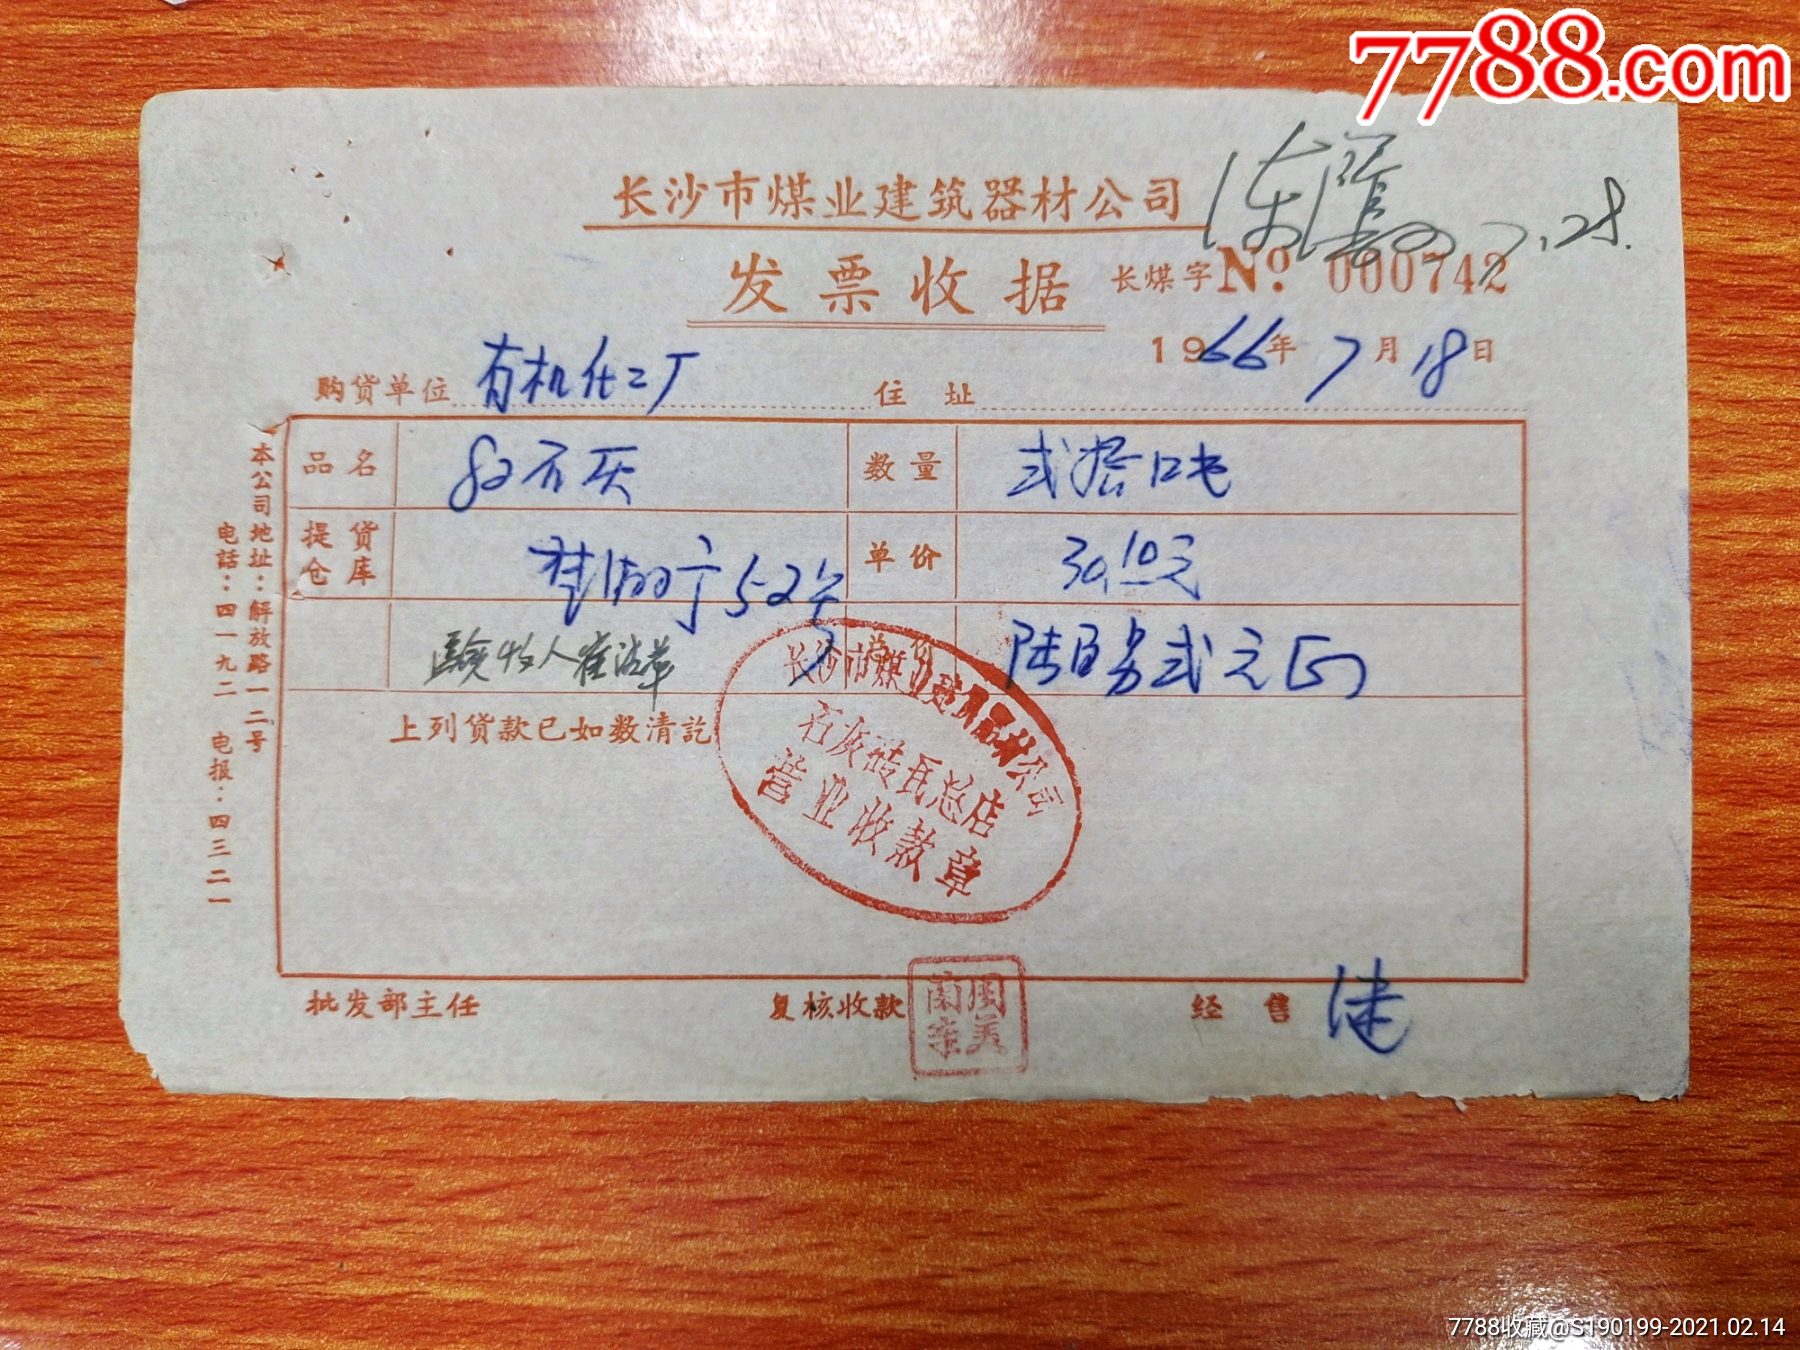 长沙市煤业建筑器材公司发票收据(82石灰.